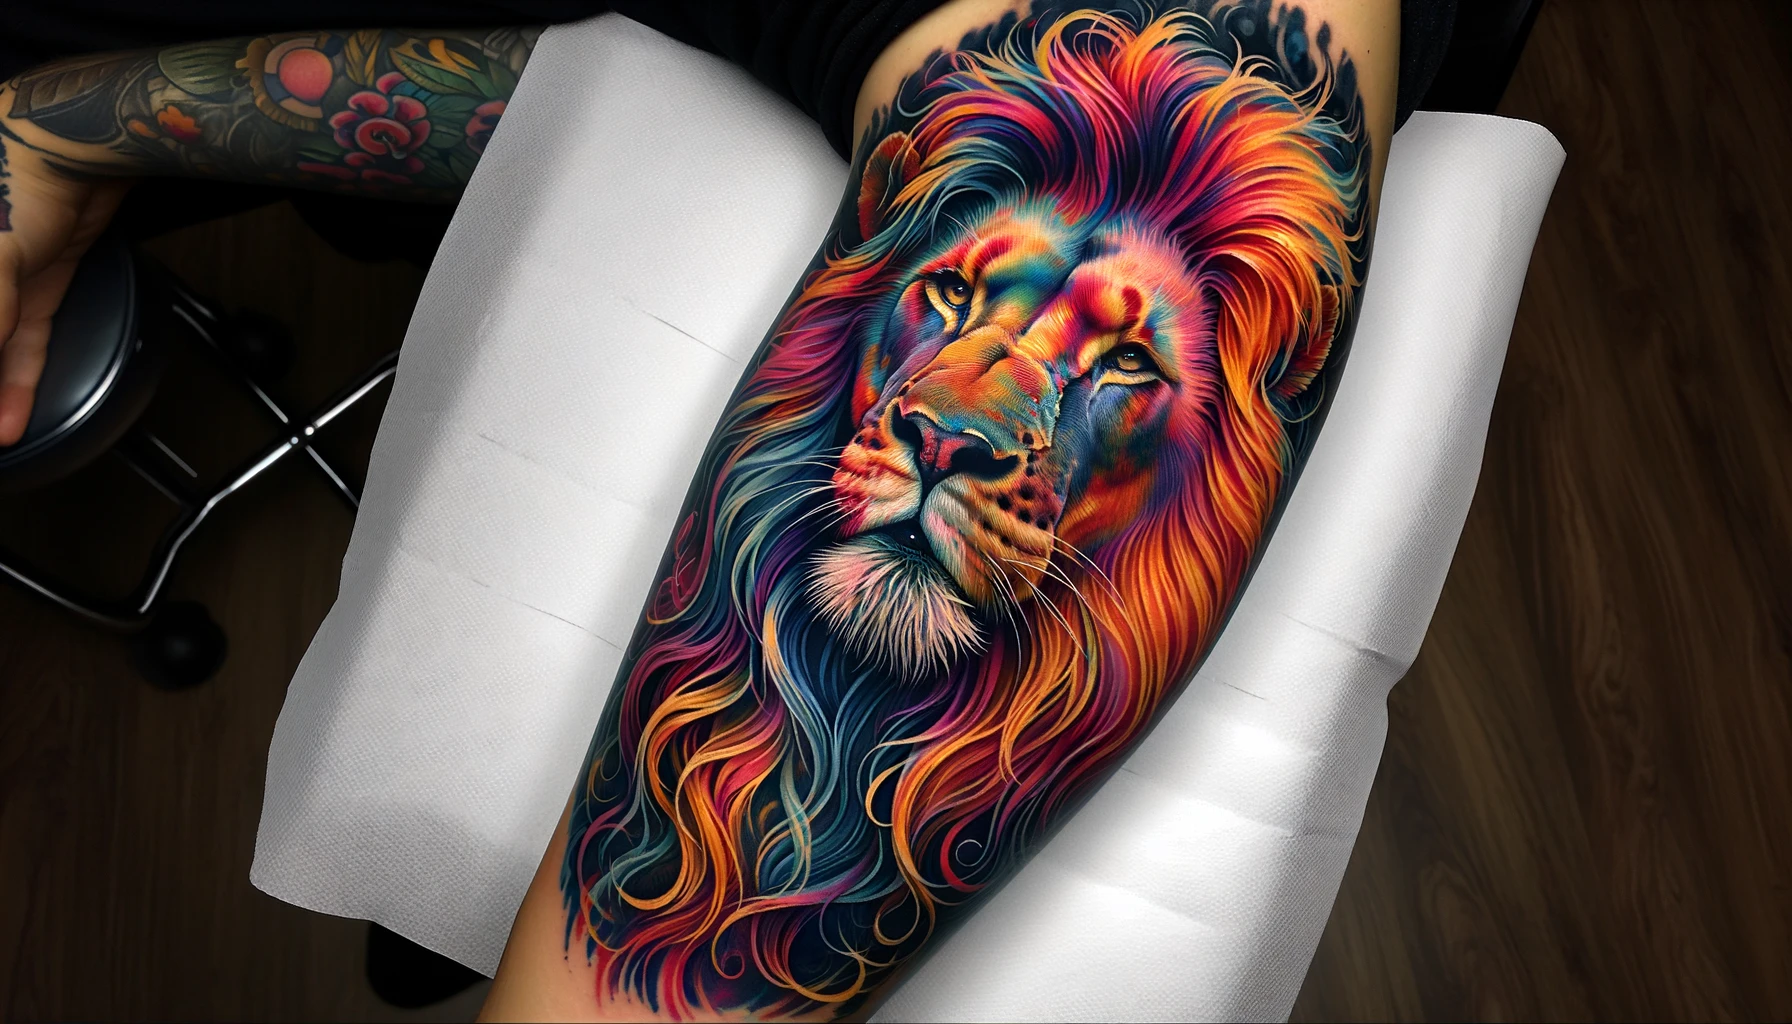 Tatuaż przedstawiający barwnego lwa w pełnym kolorze rozciąga się na ramieniu, z wibrującymi odcieniami pomarańczu, czerwieni i niebieskiego tworzącymi dynamiczną, prawie realistyczną grzywę. Jego przenikliwe spojrzenie i szczegółowe wykonanie sprawiają, że tatuaż wydaje się ożywać na skórze